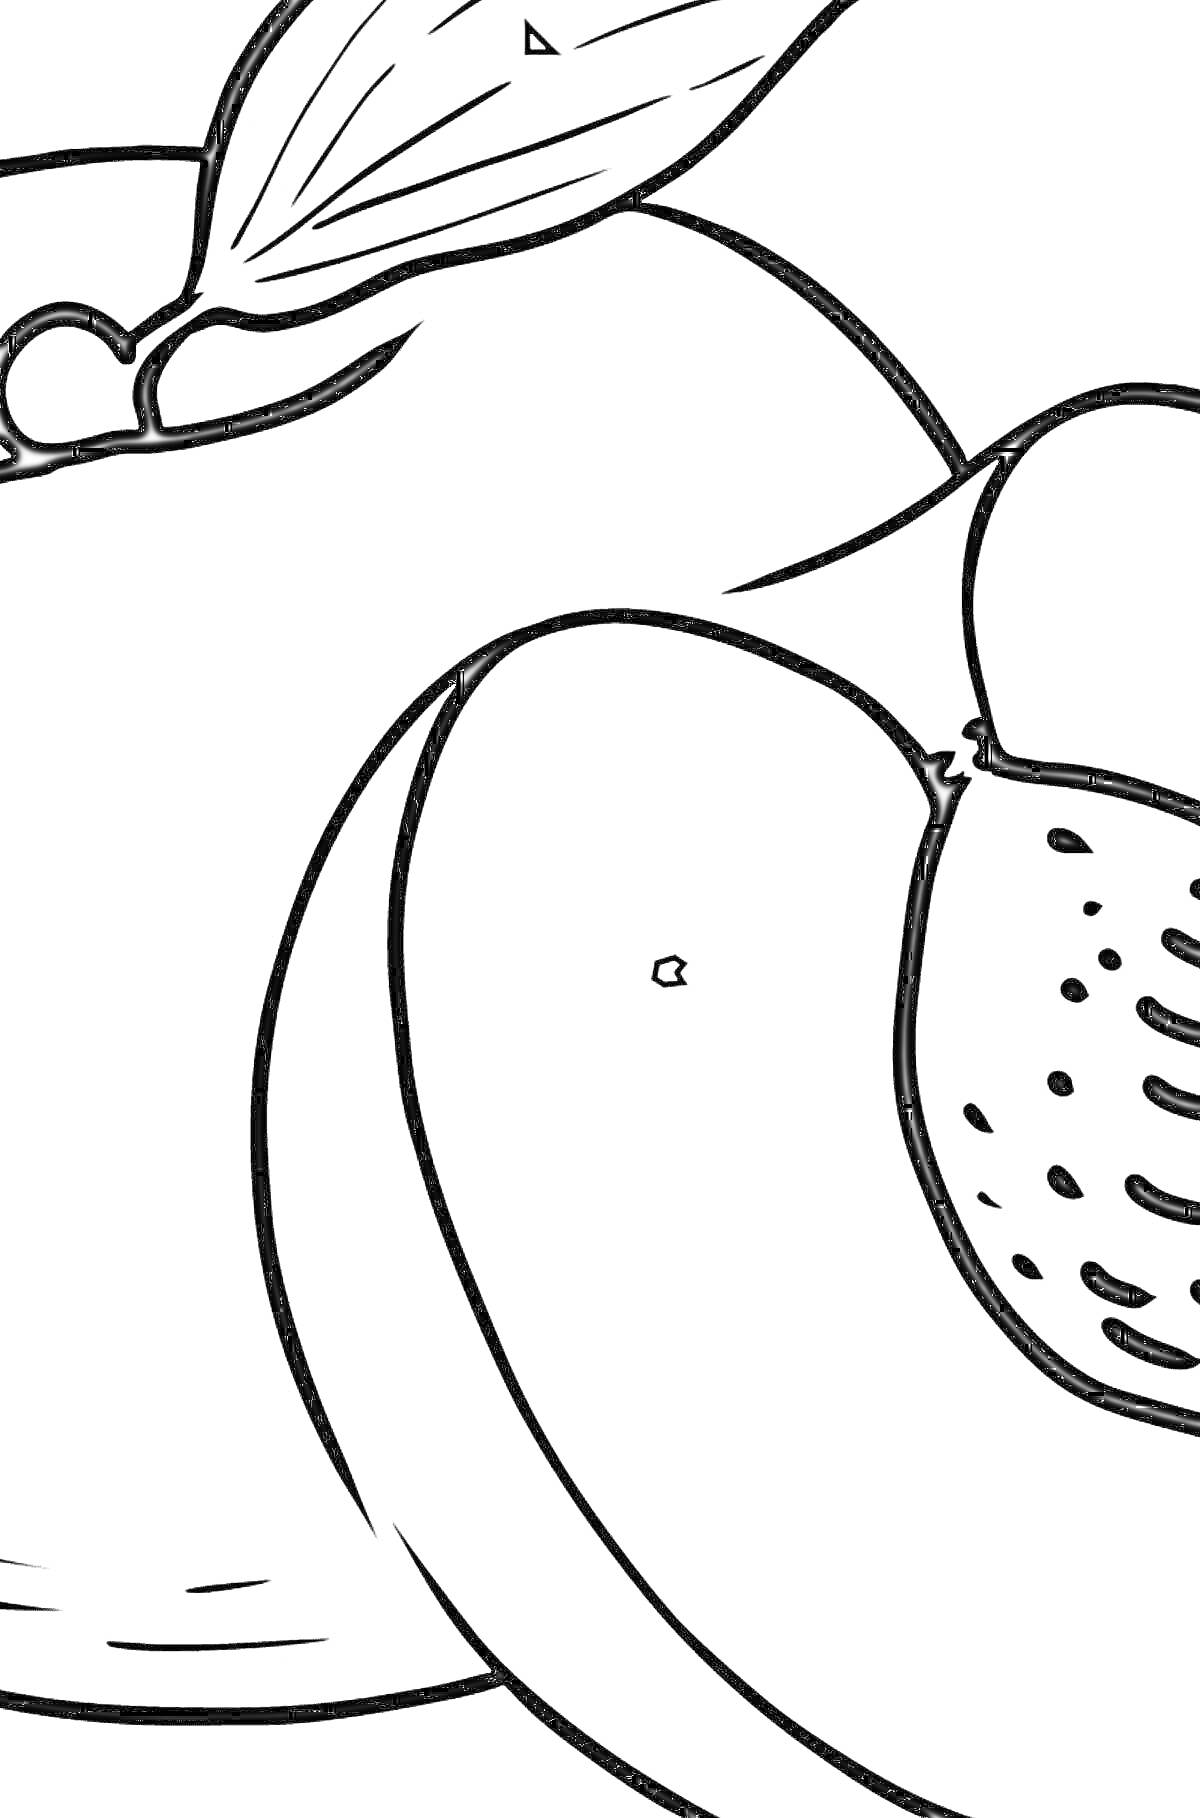 Раскраска Раскраска с изображением целого персика с листьями и половинки персика с косточкой